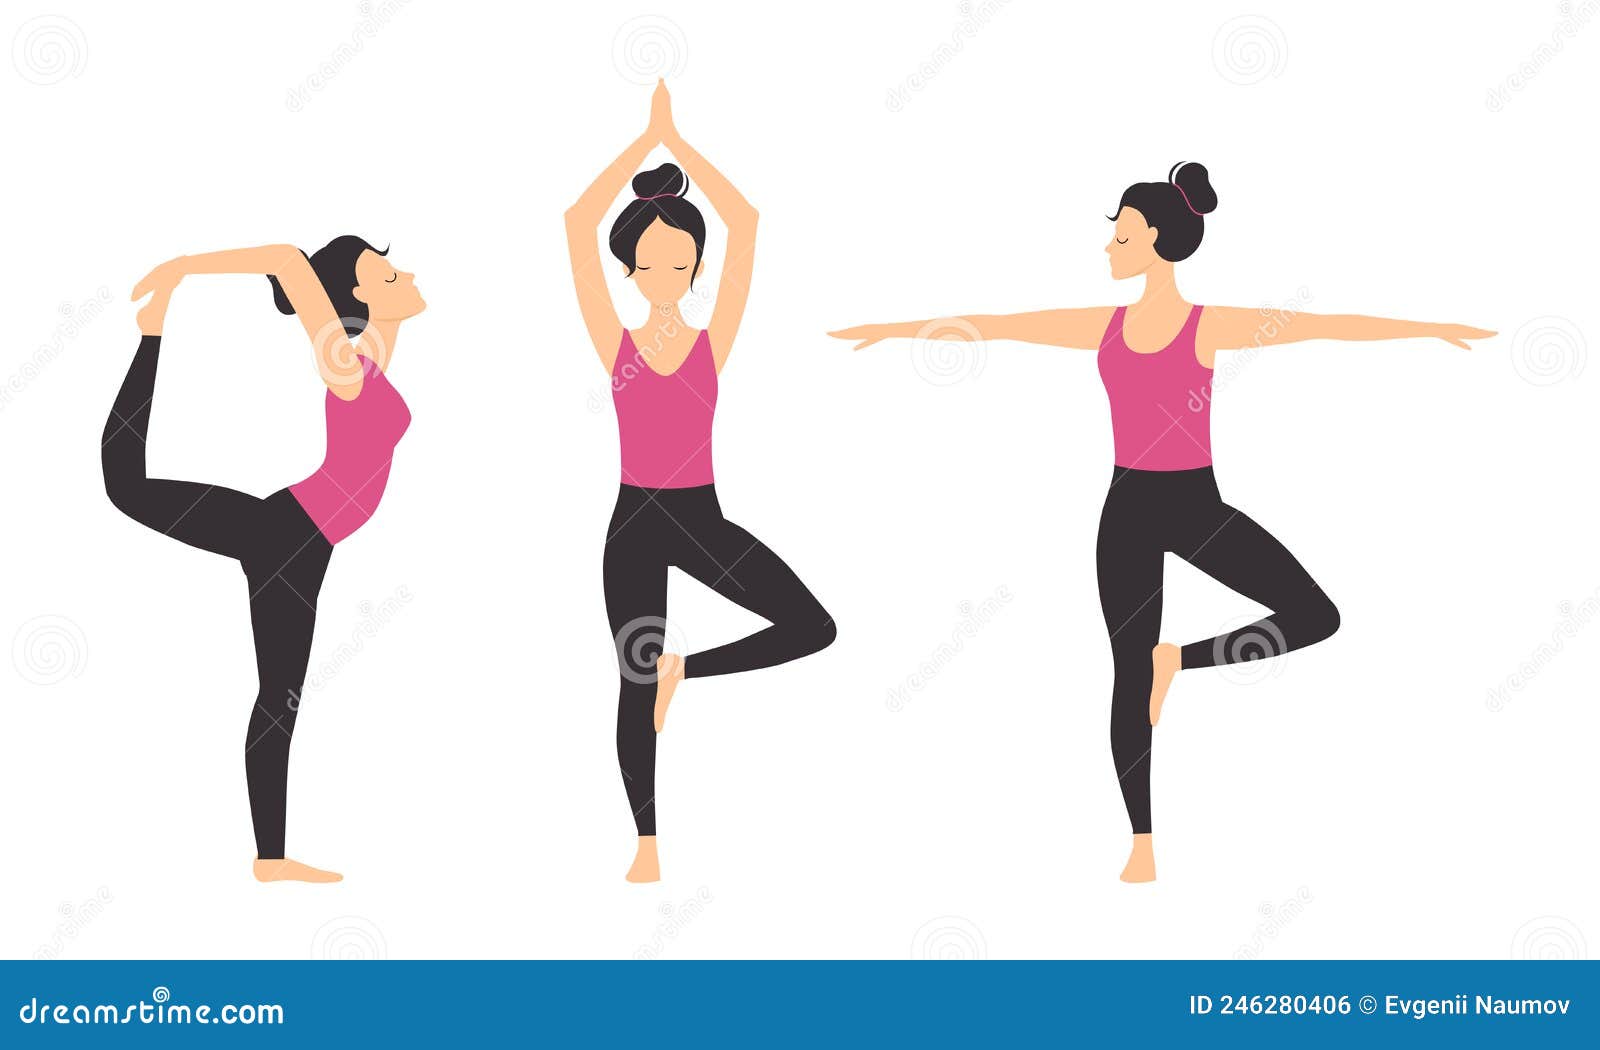 Yoga with Instructor, Adho Mukha Svanasana Stock Image - Image of person,  instructor: 52141823